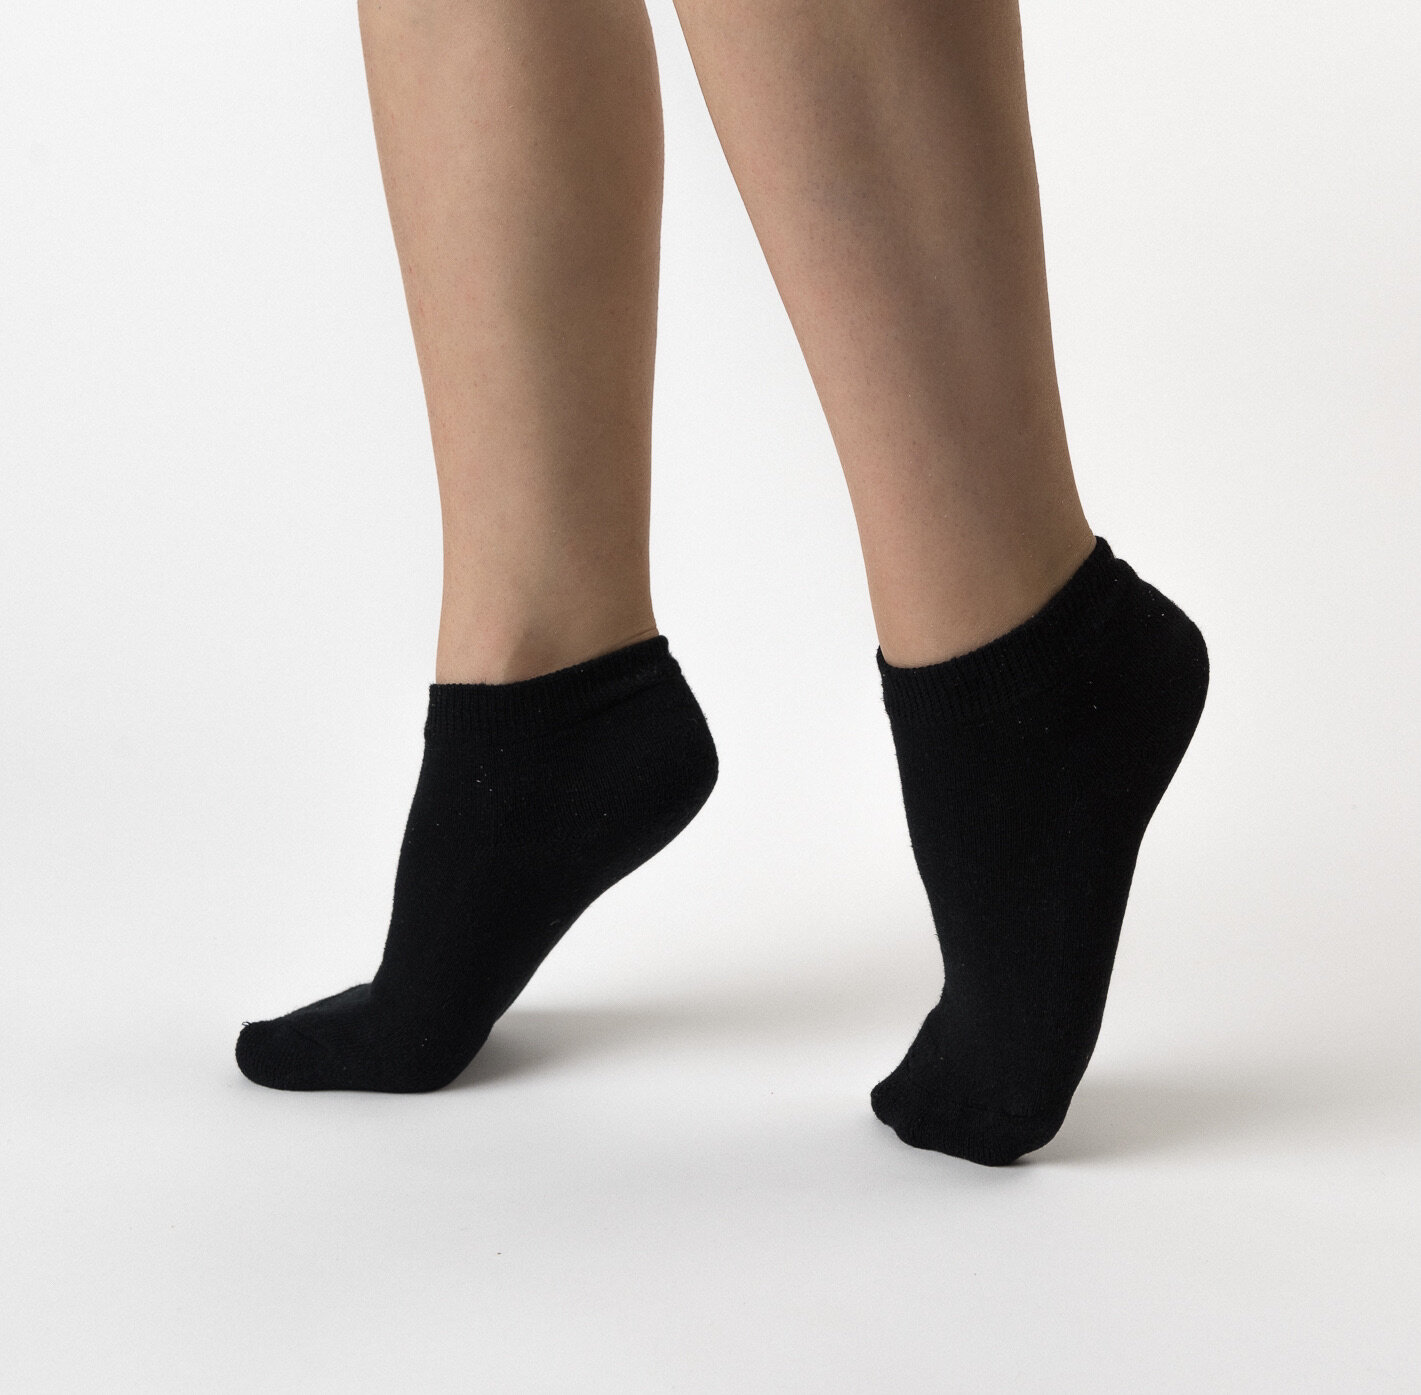 Hemp Socks — Hemp Clothing Australia